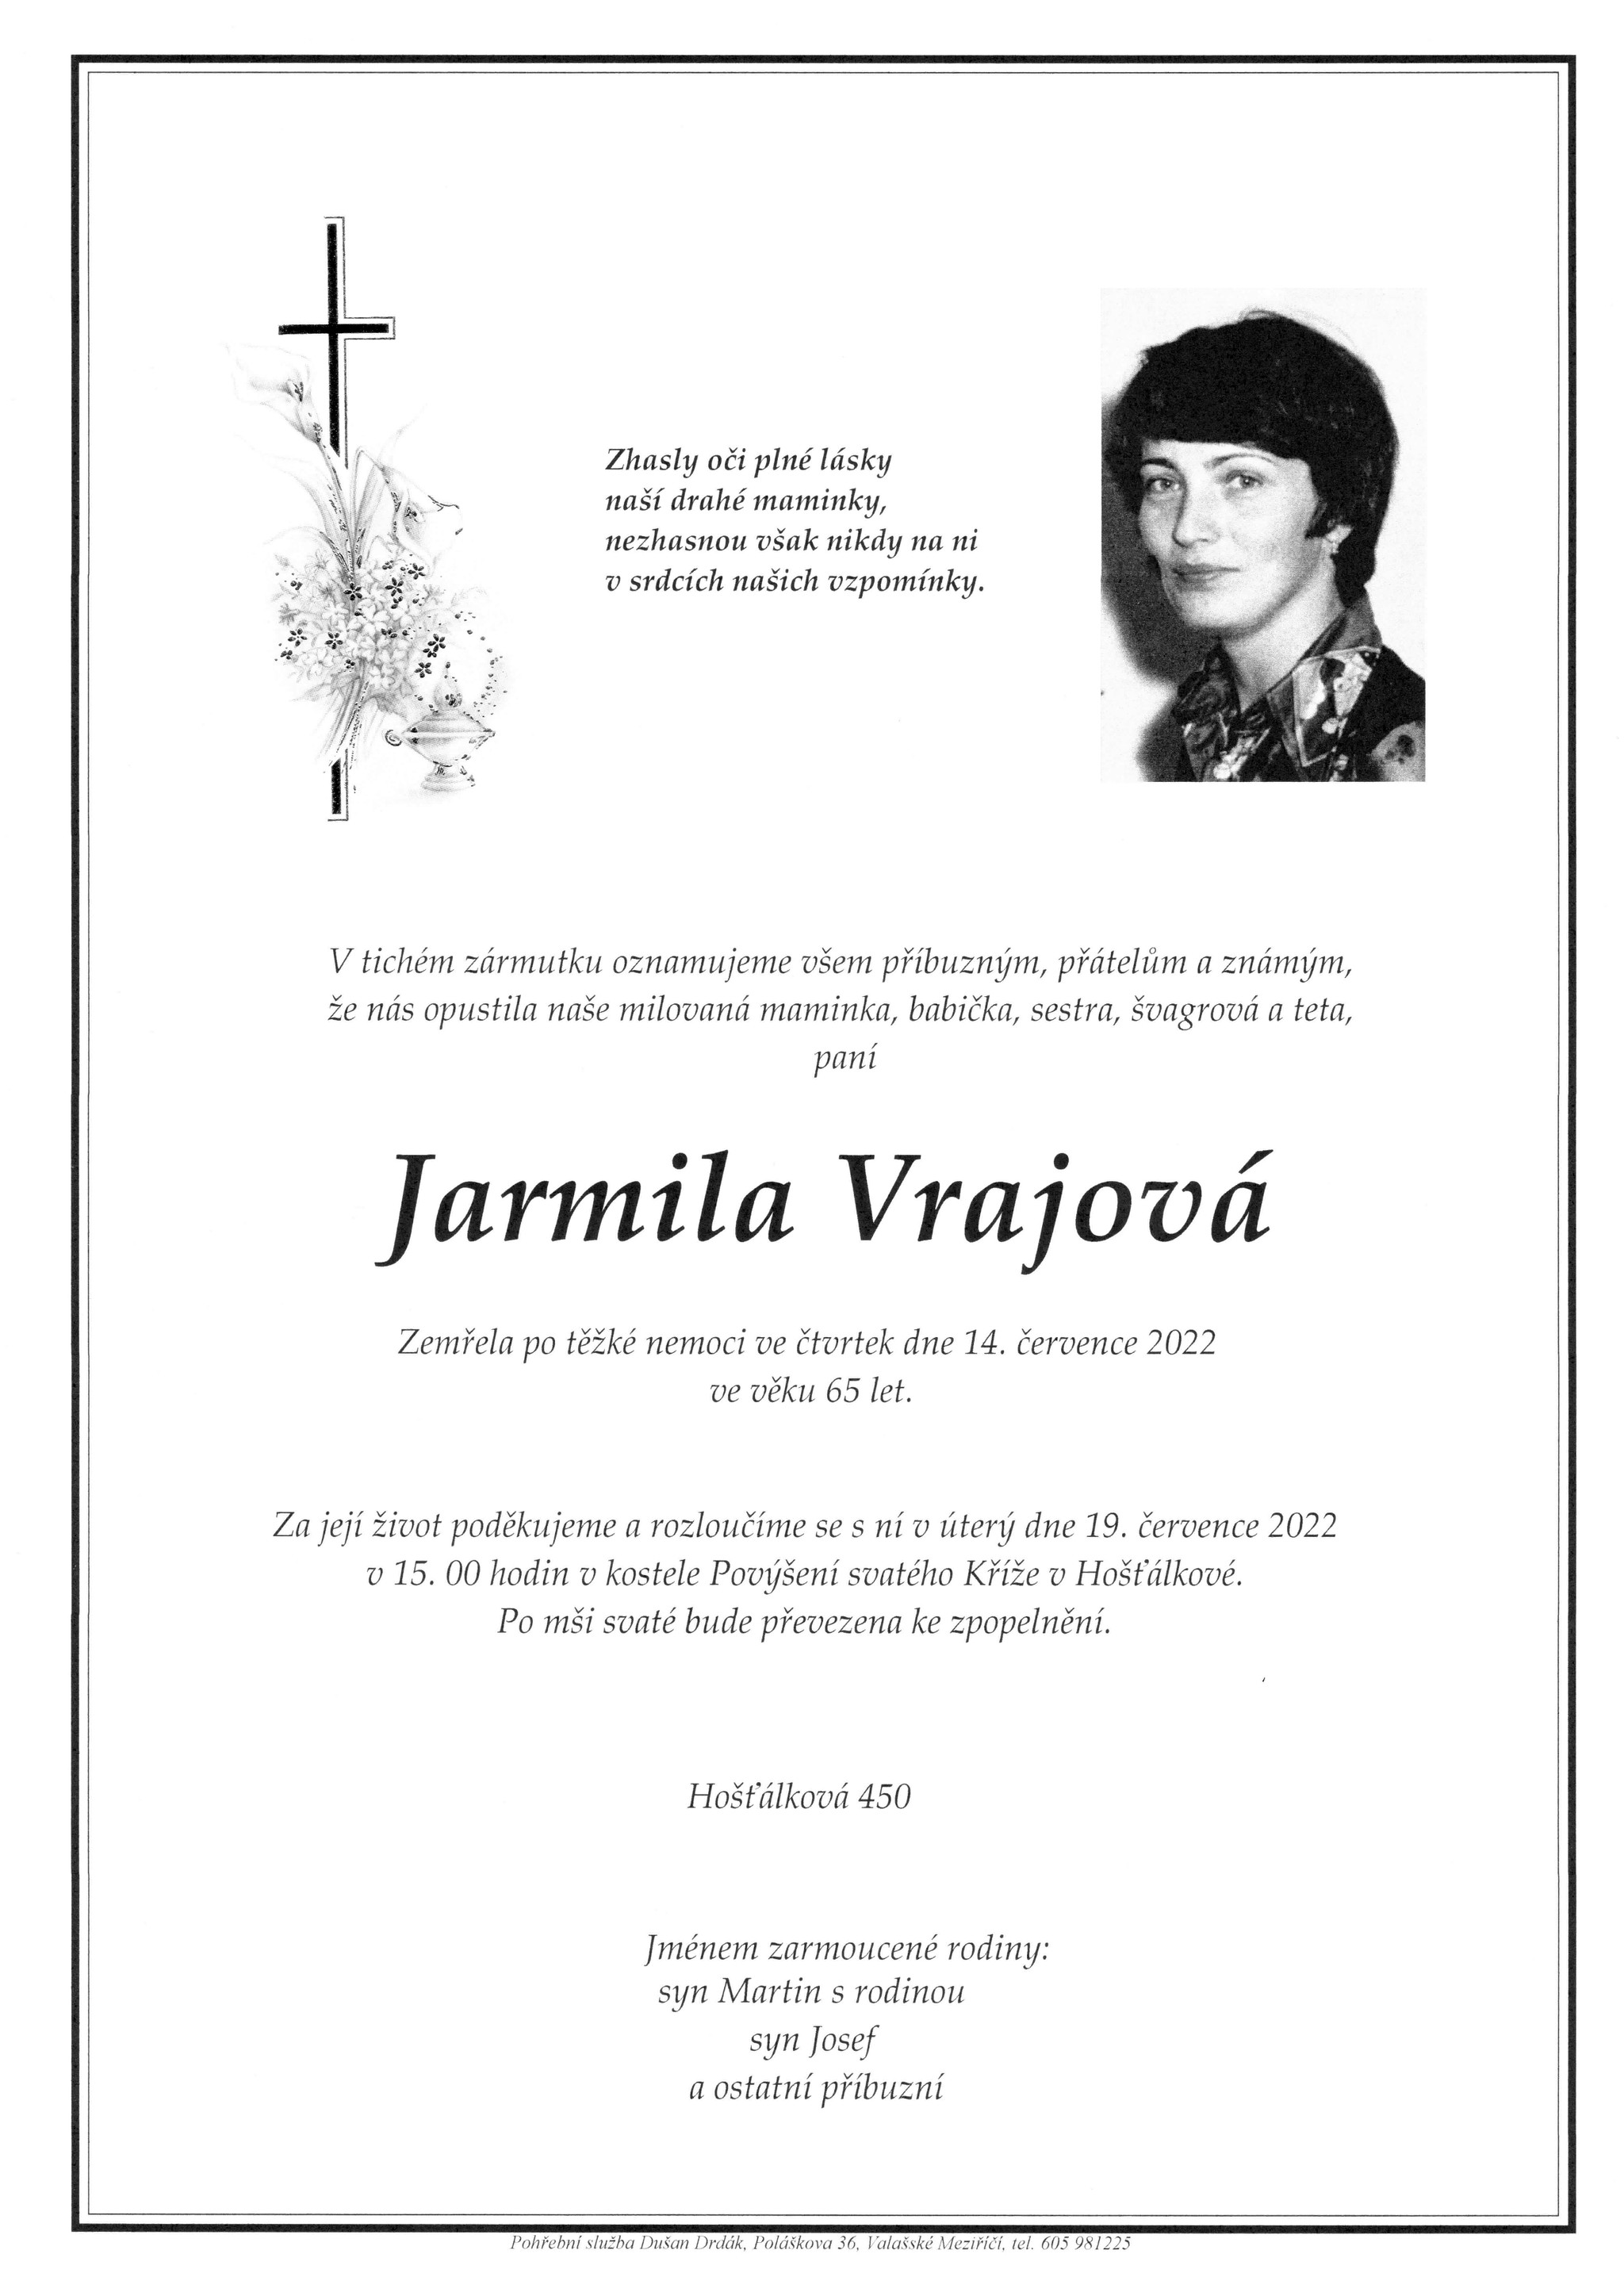 Jarmila Vrajová